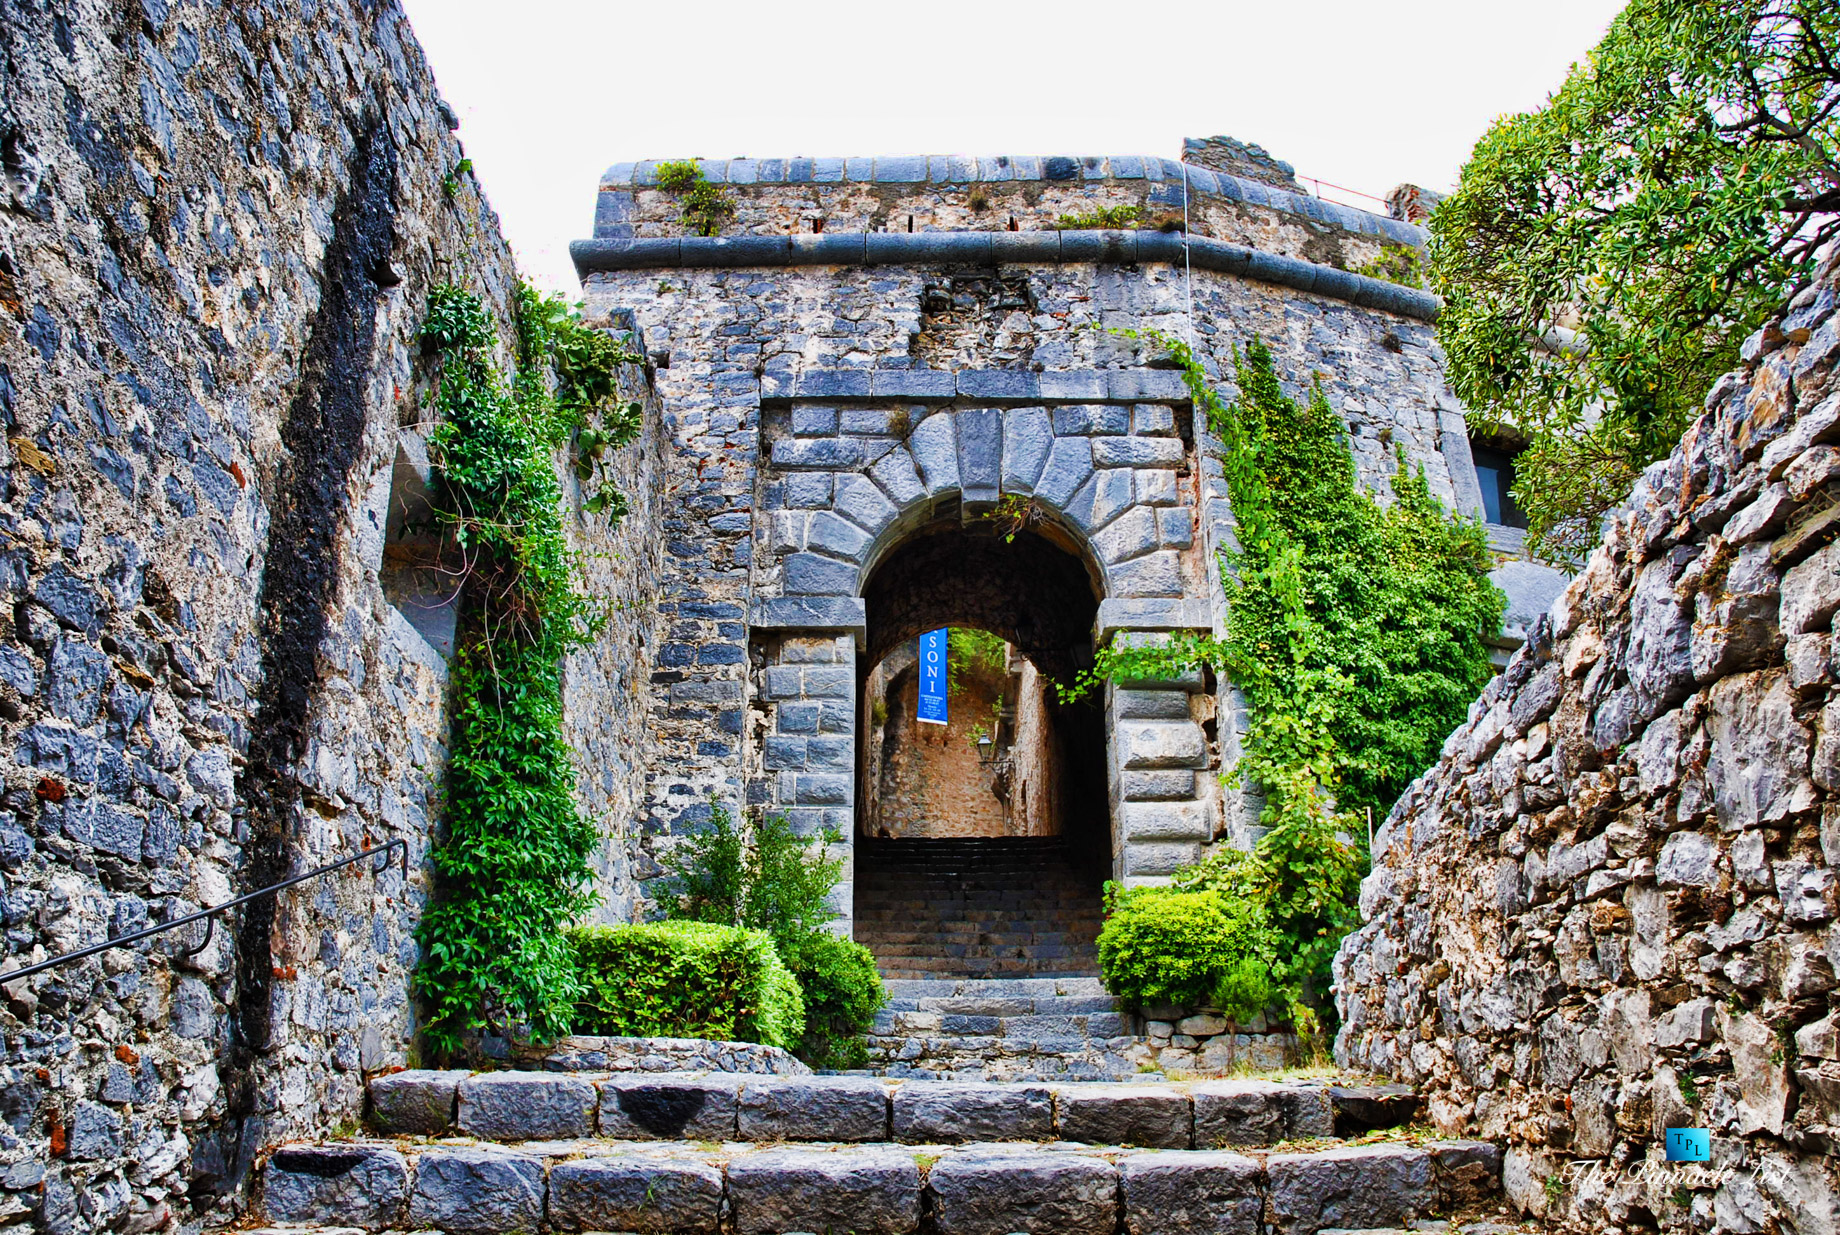 Doria Castle – Portovenere, La Spezia, Liguria – Italy’s Hidden Treasure